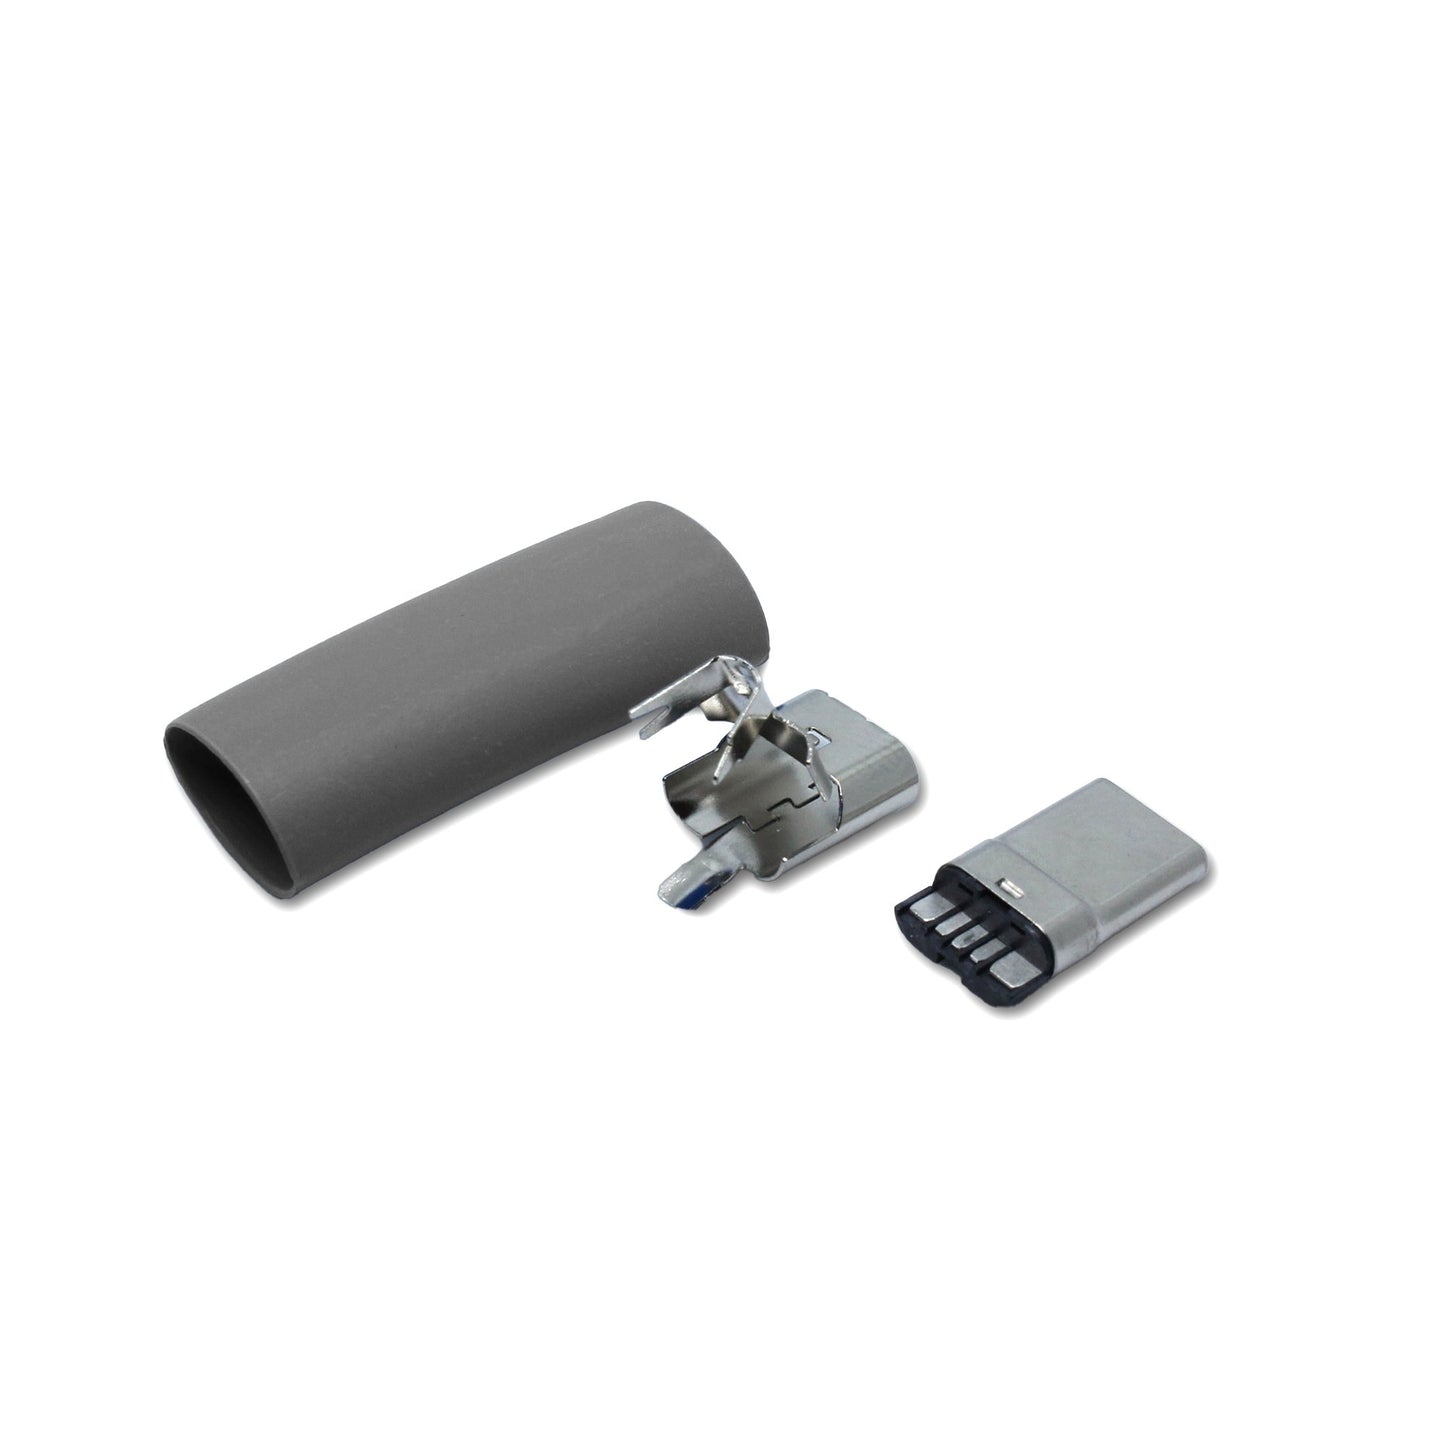 Einzelteile USB C Stecker, Ersatzteil grau für ein USB 2.0 Kabel